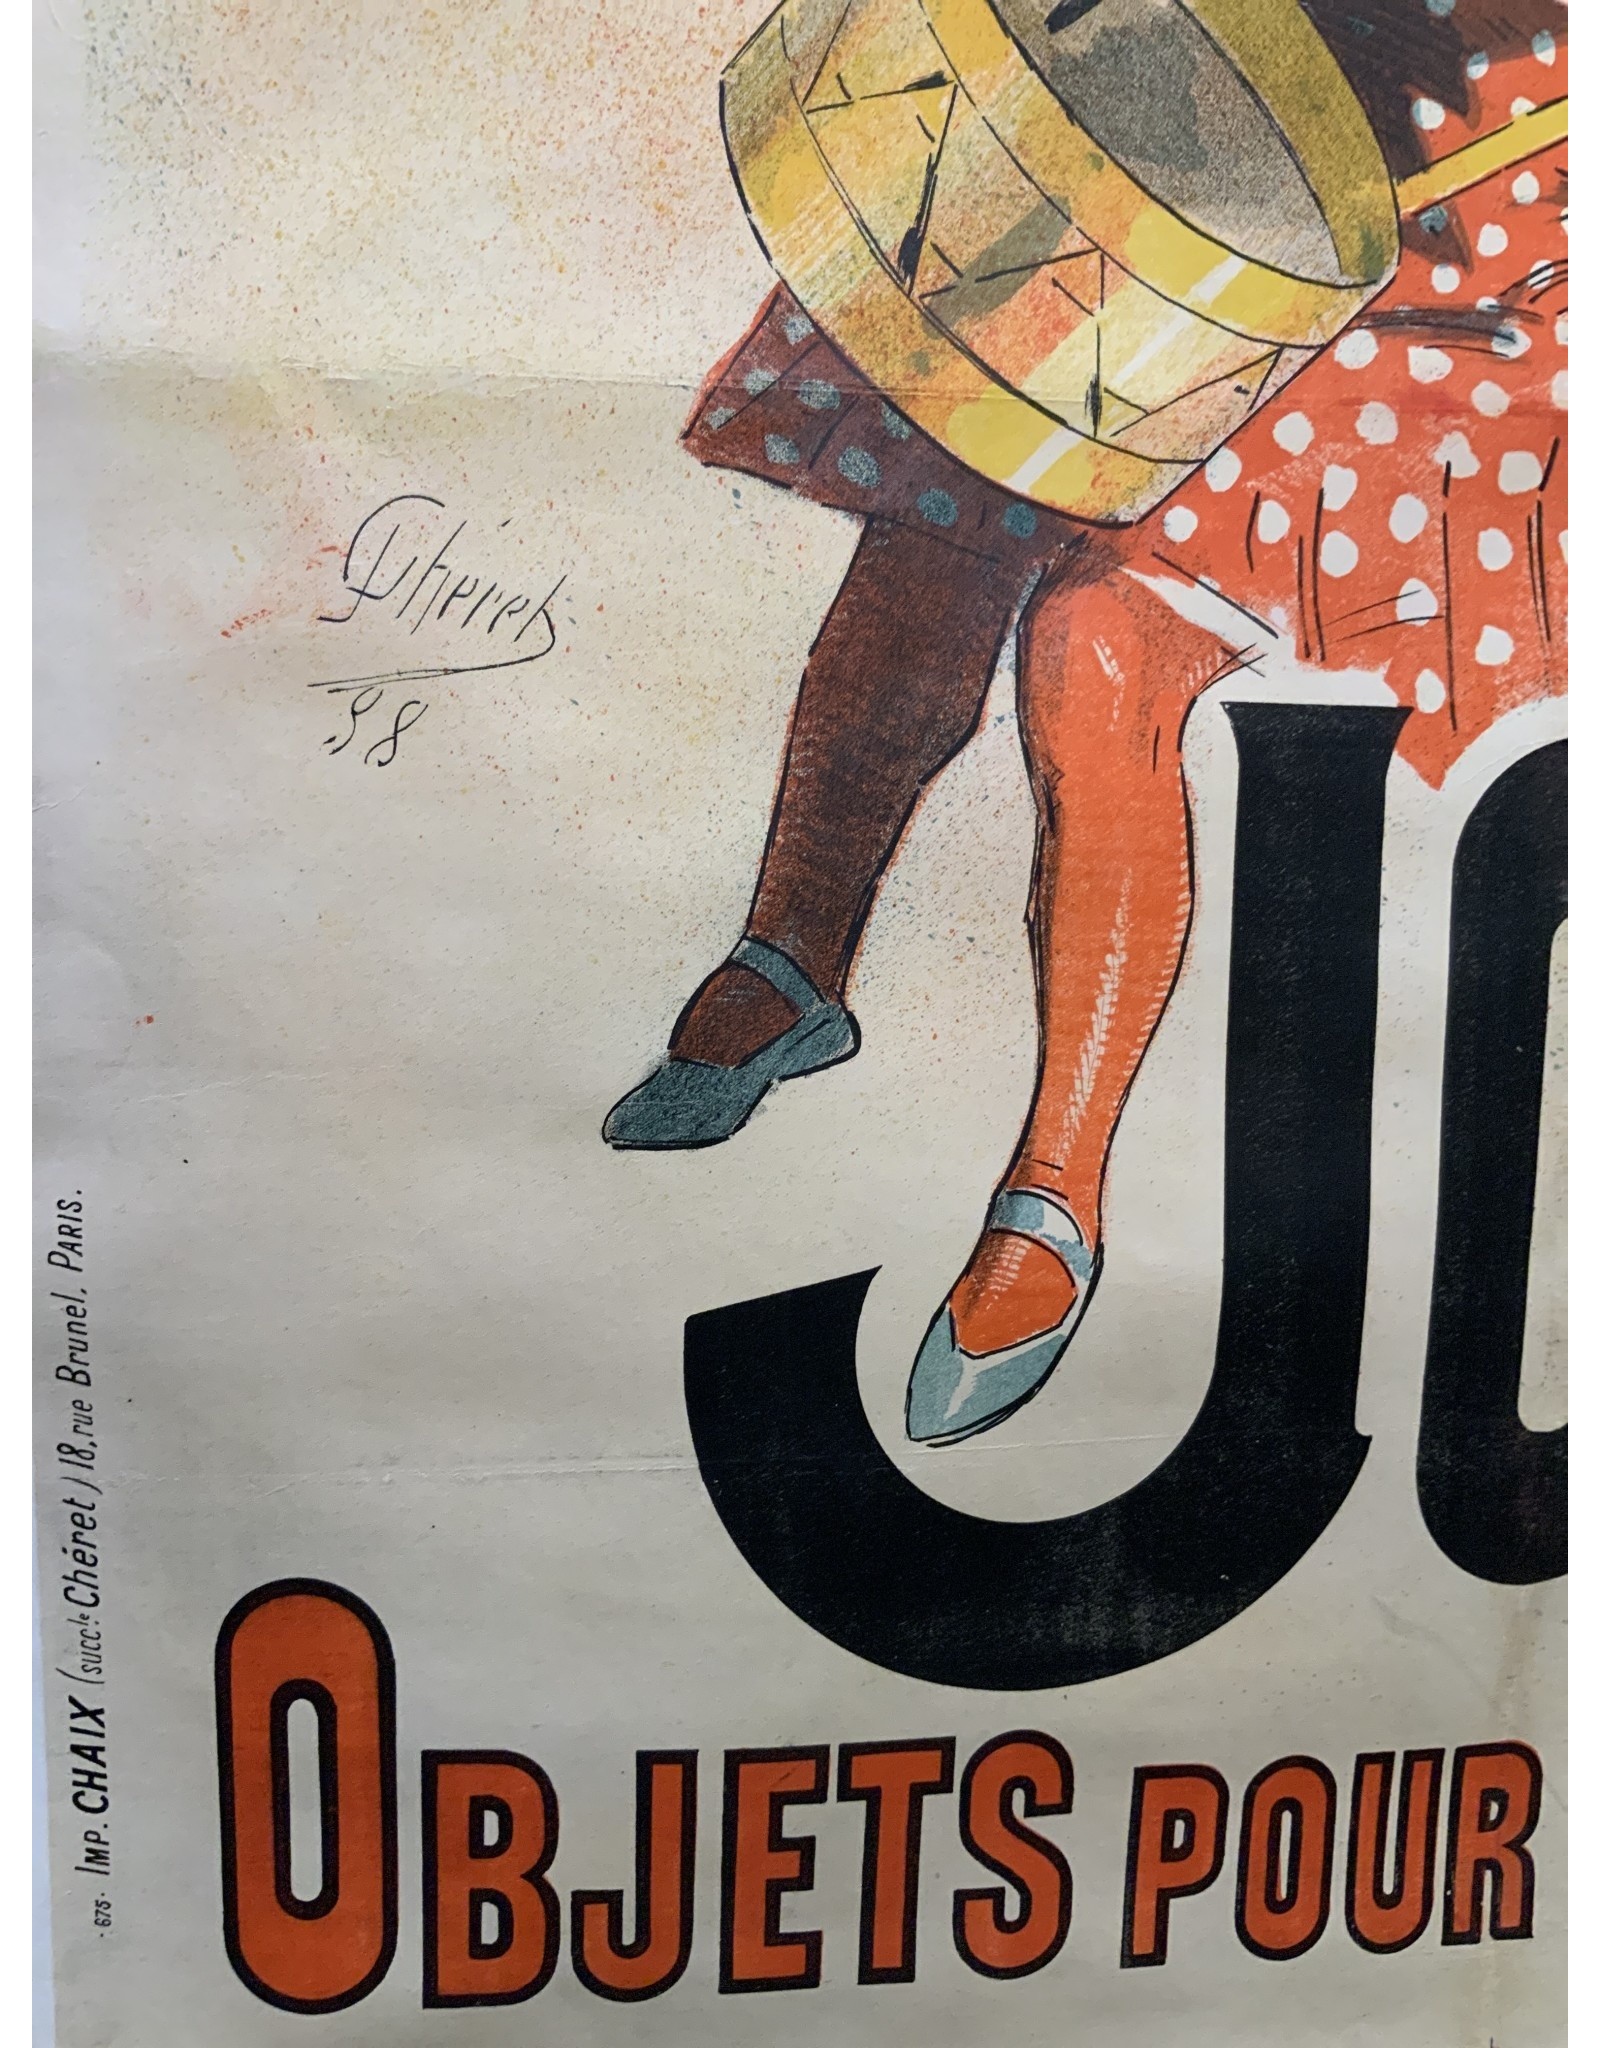 SPV Aux Buttes Chaumont/Jouets. 1888 By Jules Cheret